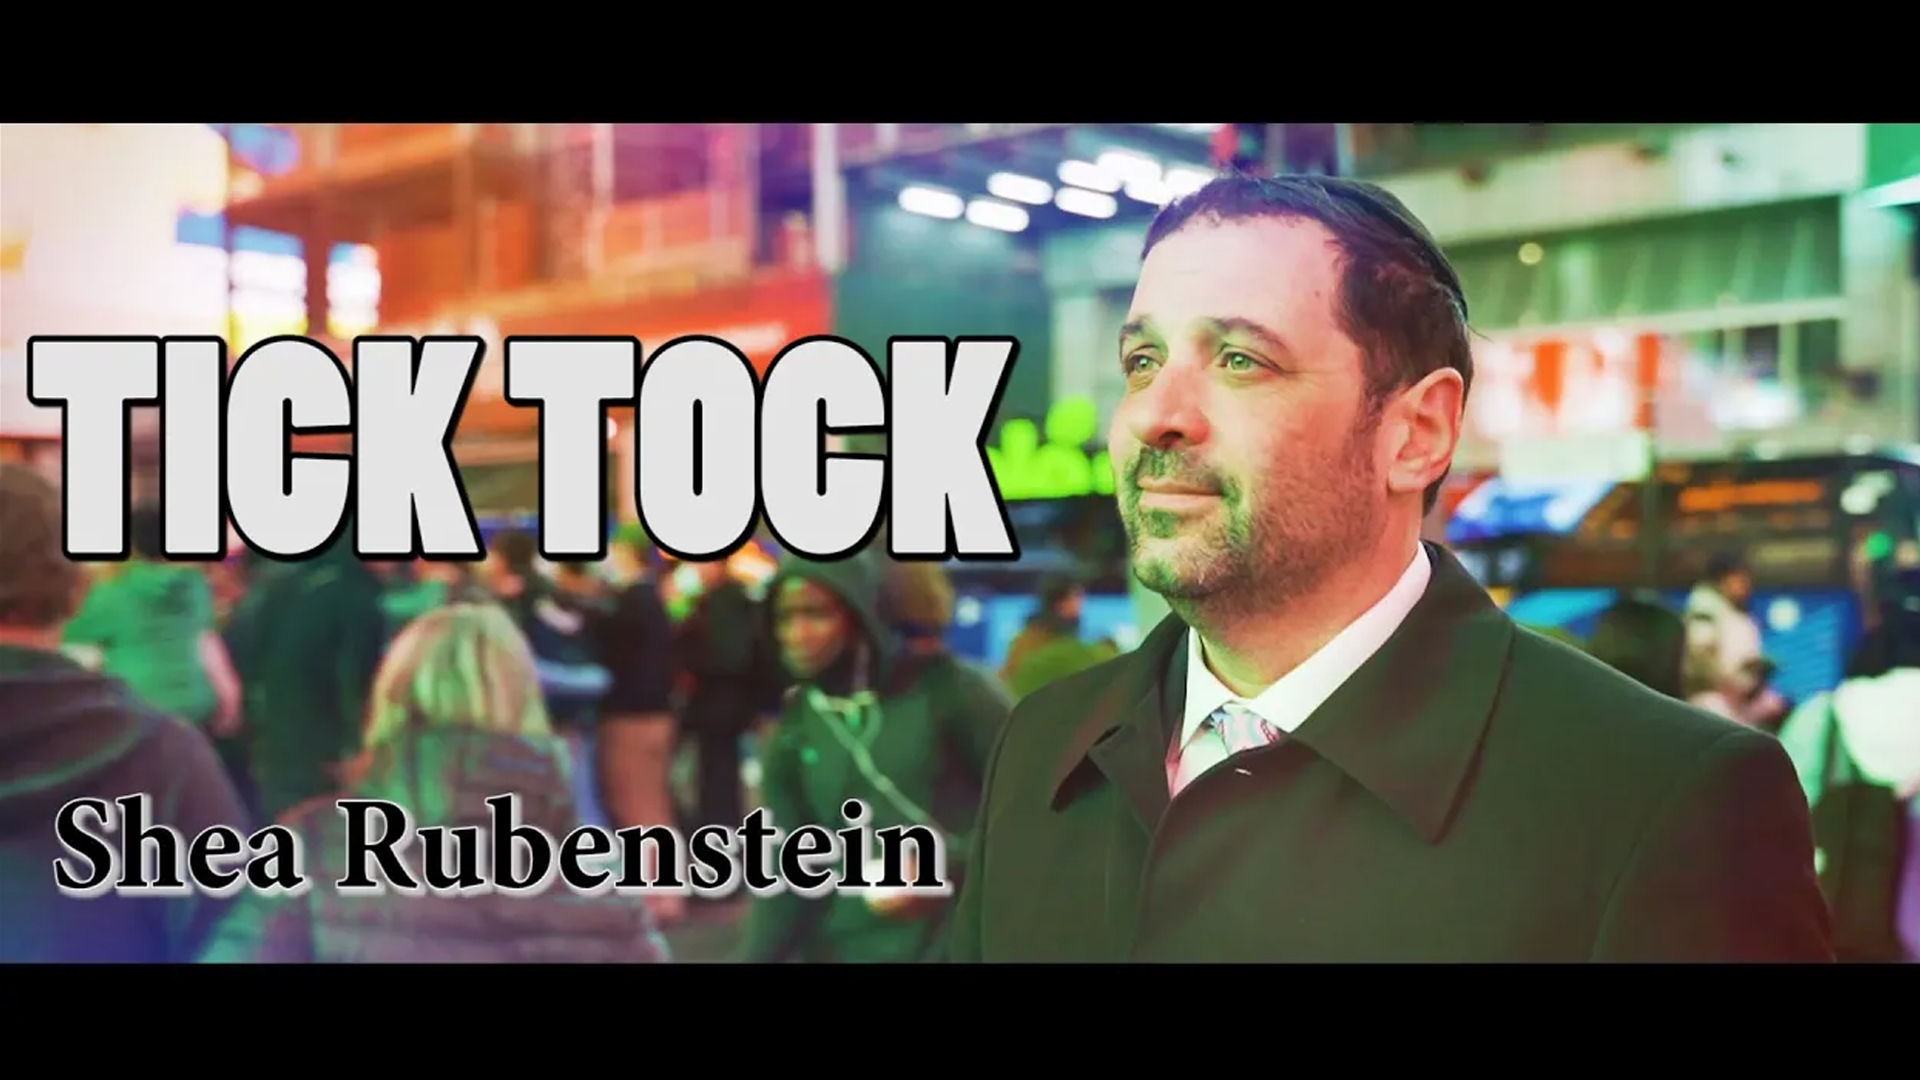 שייע רובינשטיין בקליפ חדש: "טיק טוק"